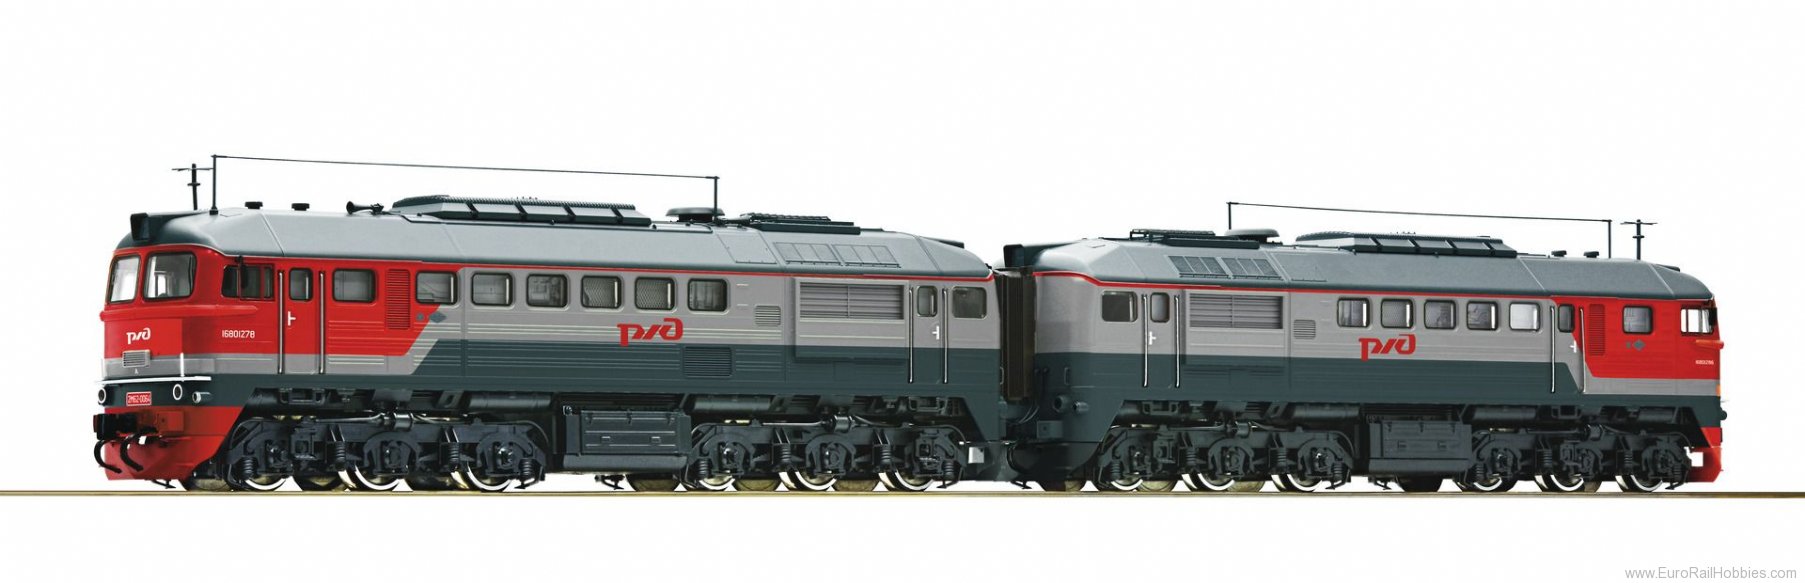 Roco 79793 RZD Diesel locomotive 2M62-0064, (Marklin AC 